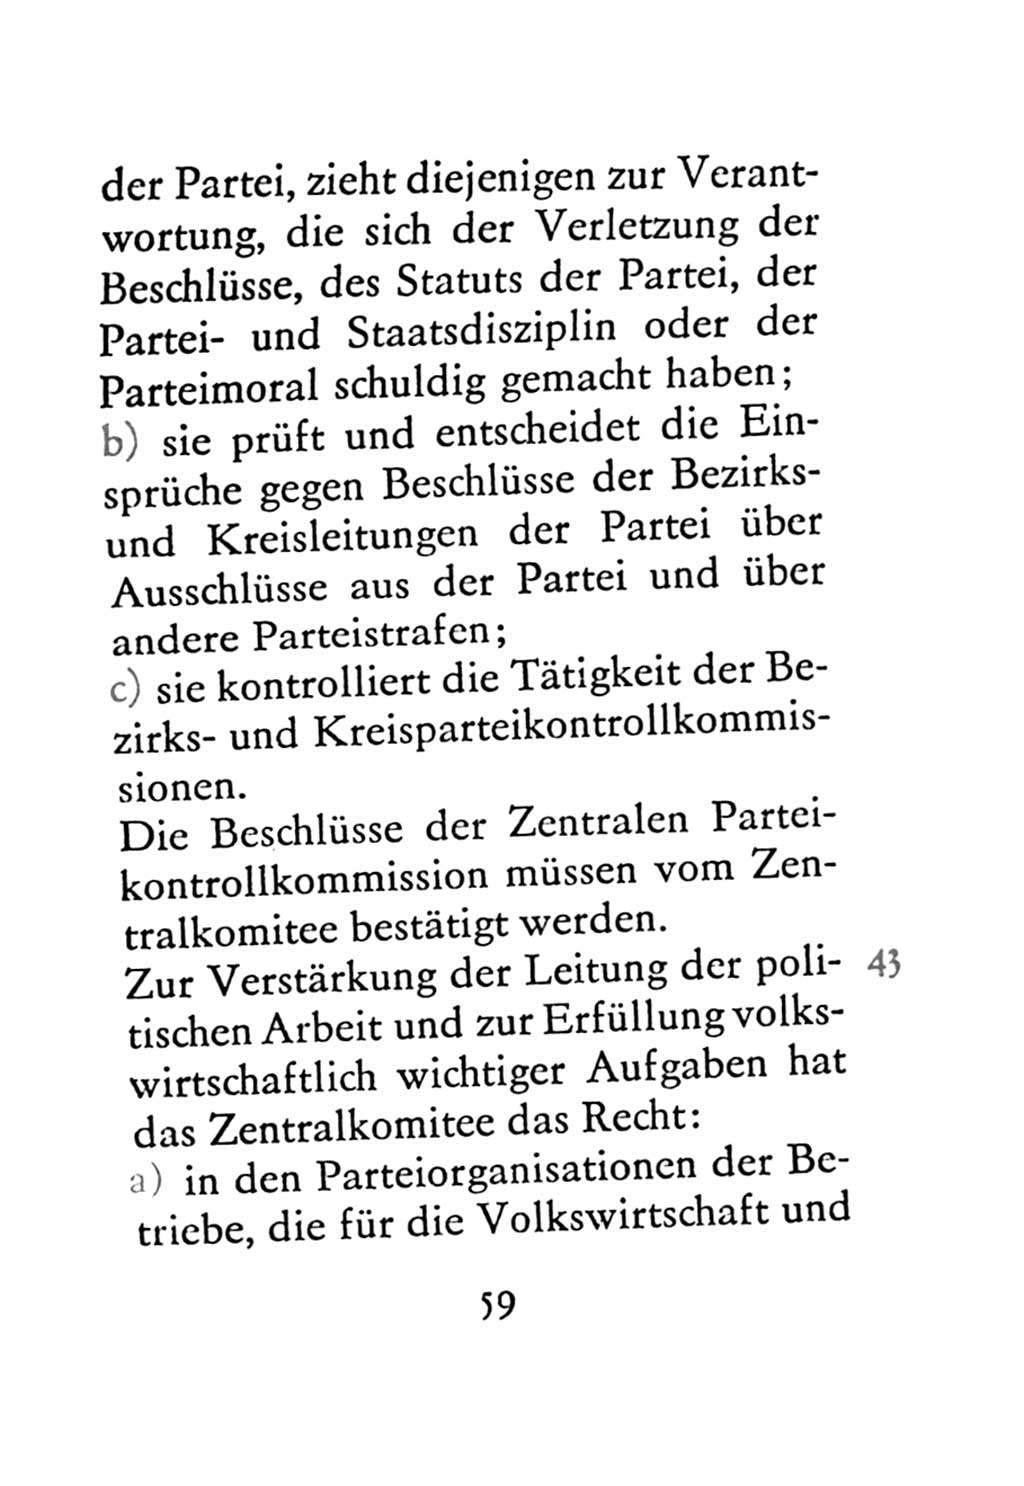 Statut der Sozialistischen Einheitspartei Deutschlands (SED) 1971, Seite 59 (St. SED DDR 1971, S. 59)